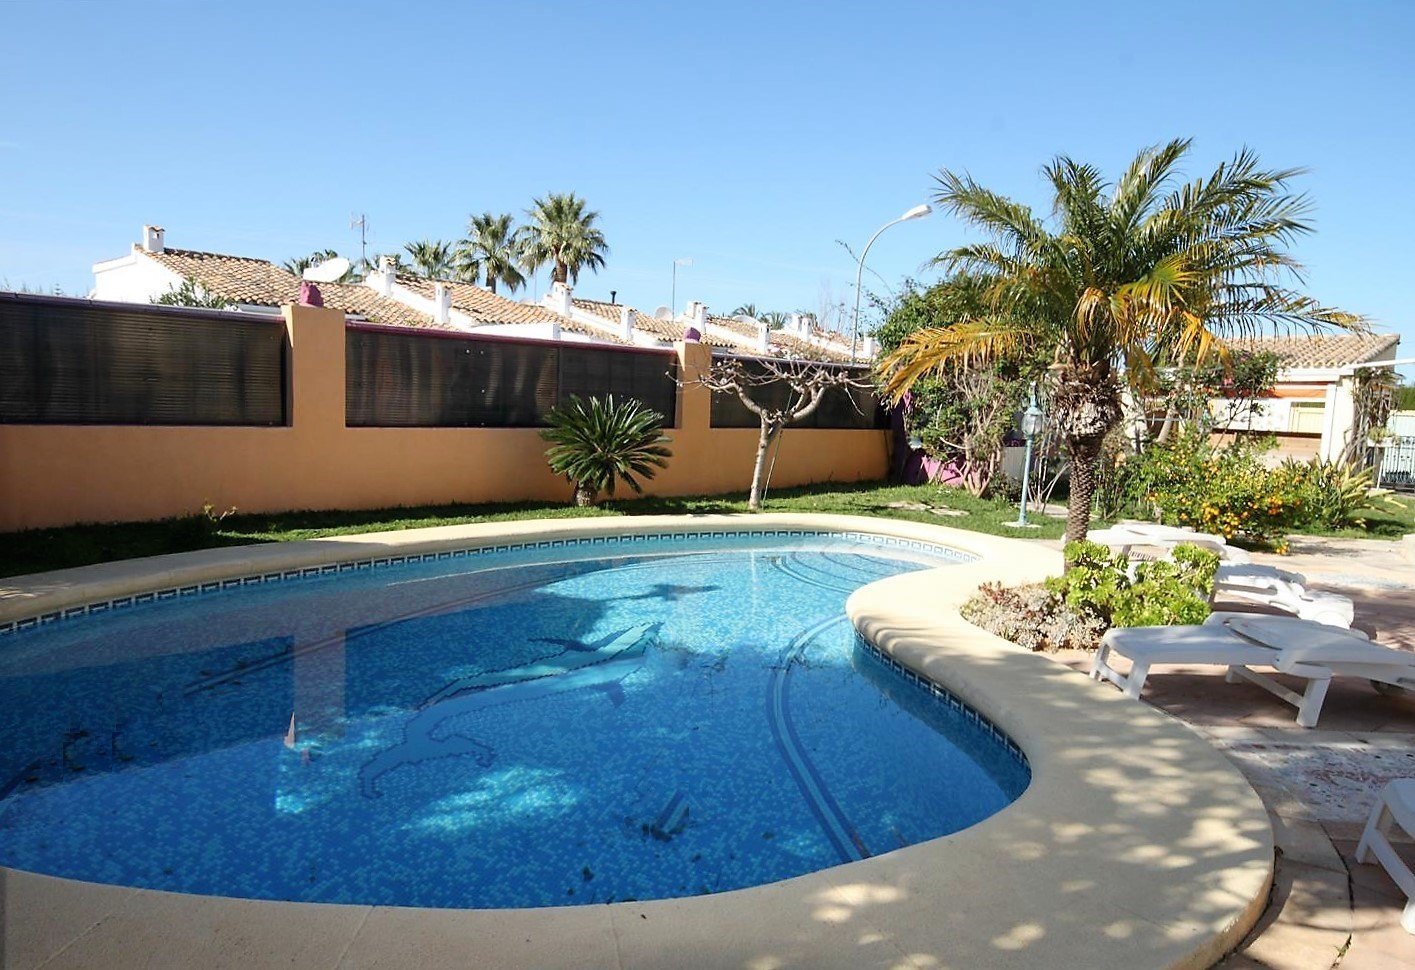 Maison 4 chambres, piscine, grande parcelle Els Poblets